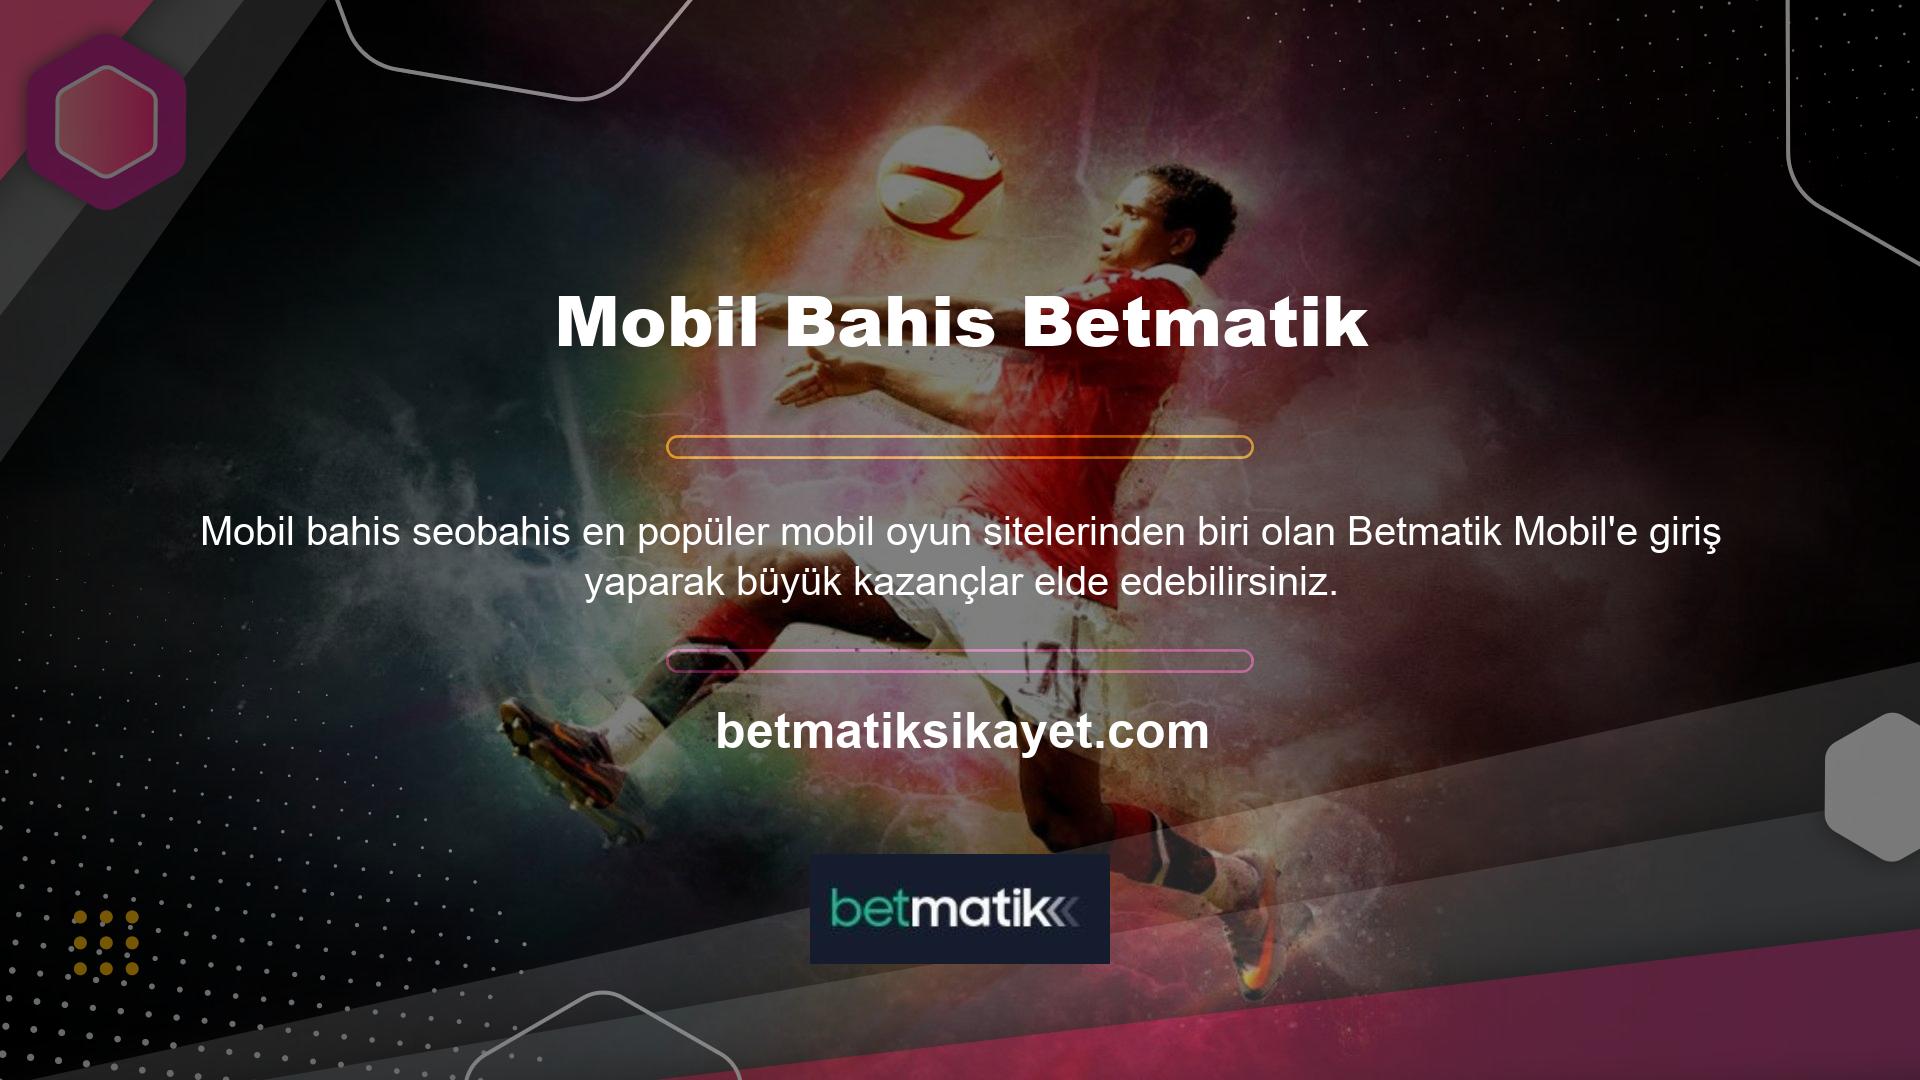 Betmatik web sitesinin mobil uygulaması diğer bahis platformları gibi indirme gerektirmez